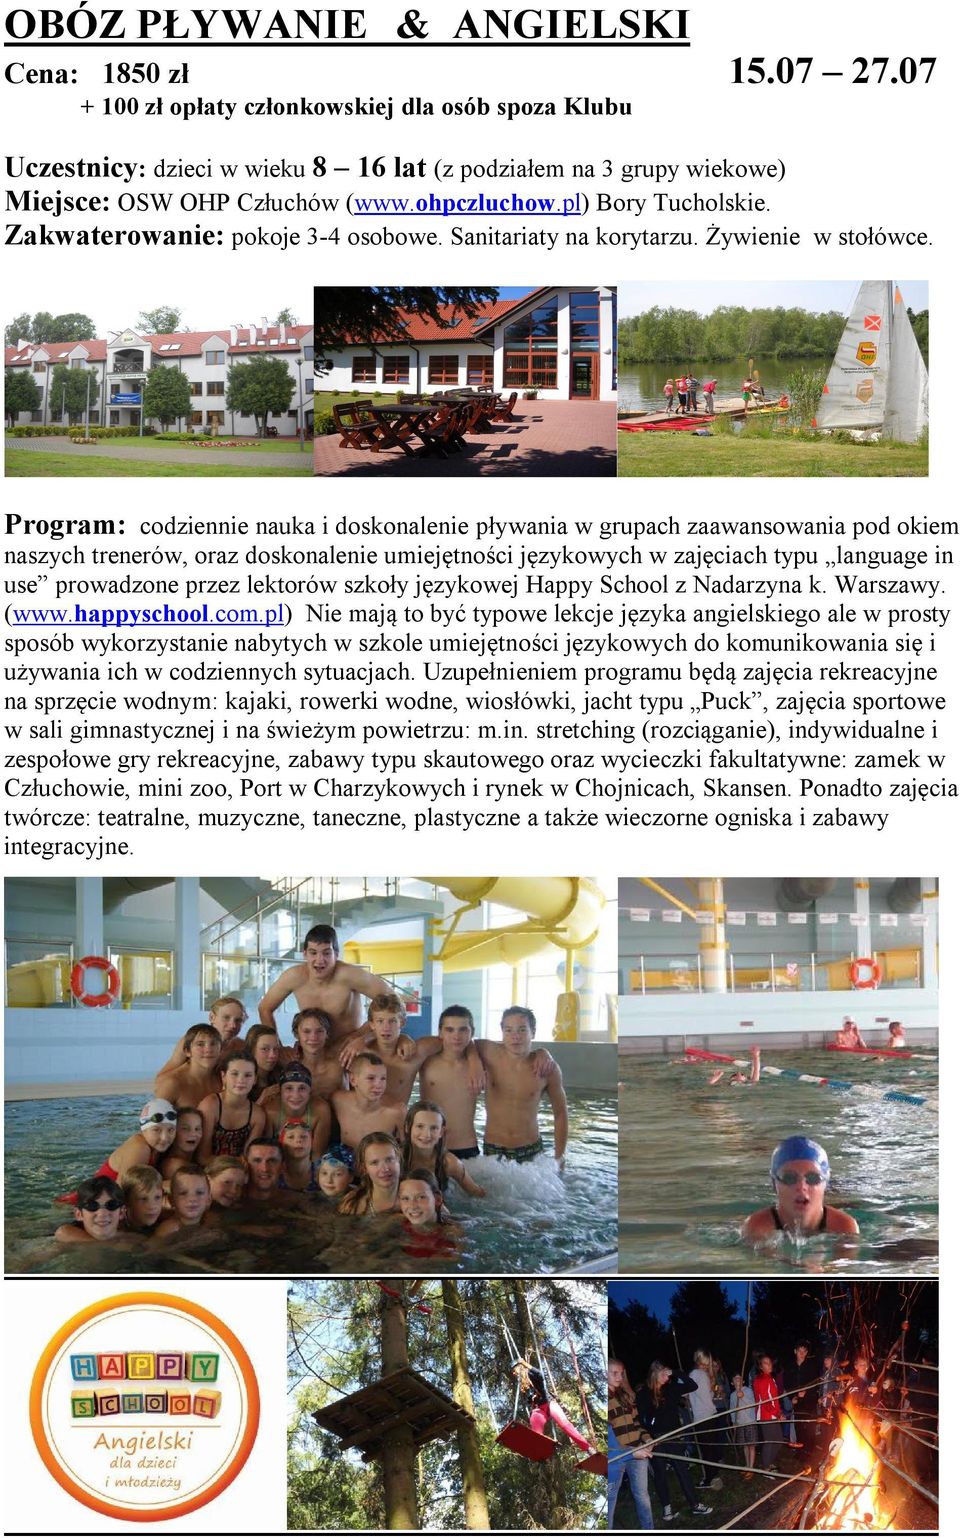 Program: codziennie nauka i doskonalenie pływania w grupach zaawansowania pod okiem naszych trenerów, oraz doskonalenie umiejętności językowych w zajęciach typu language in use prowadzone przez